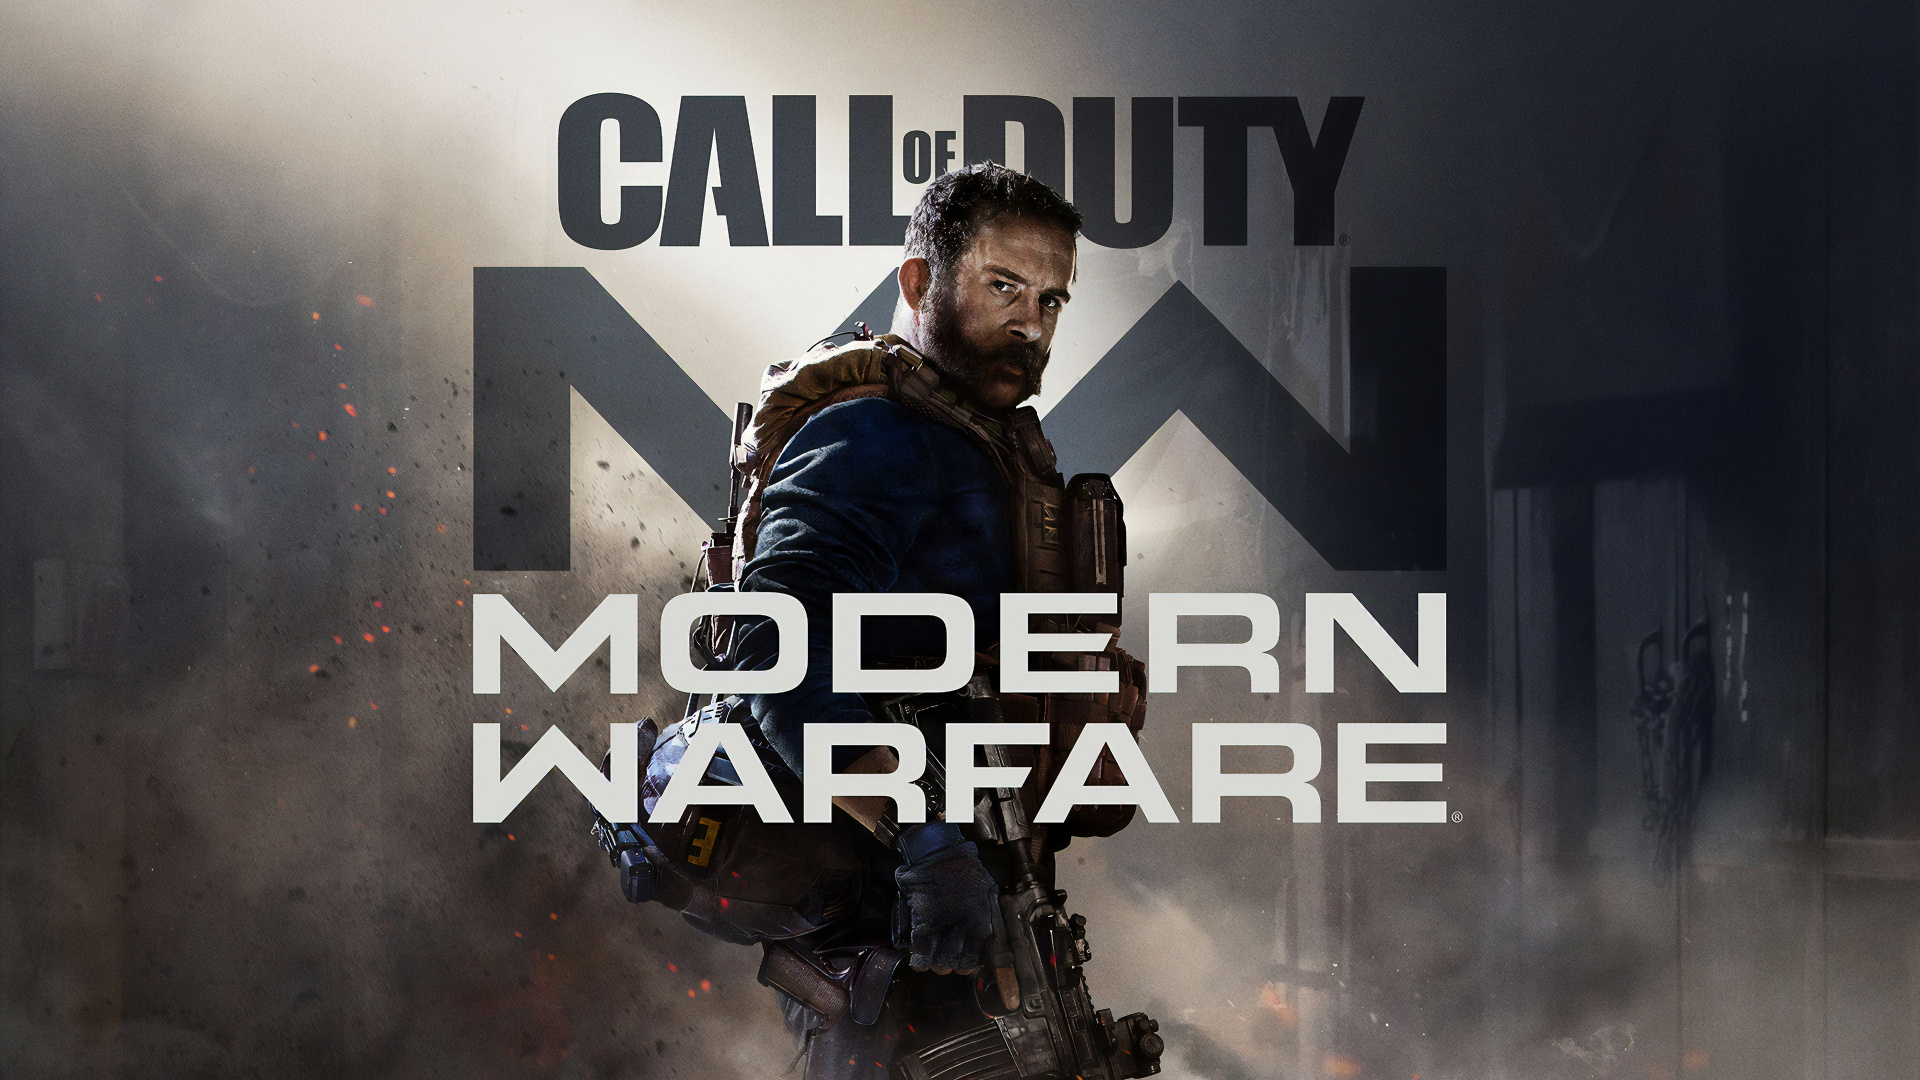 Call of Duty Modern Warfare, Call of Duty 4-modern Warfare, Movie, Pc-Spiel, Shooter-Spiel. Wallpaper in 1920x1080 Resolution